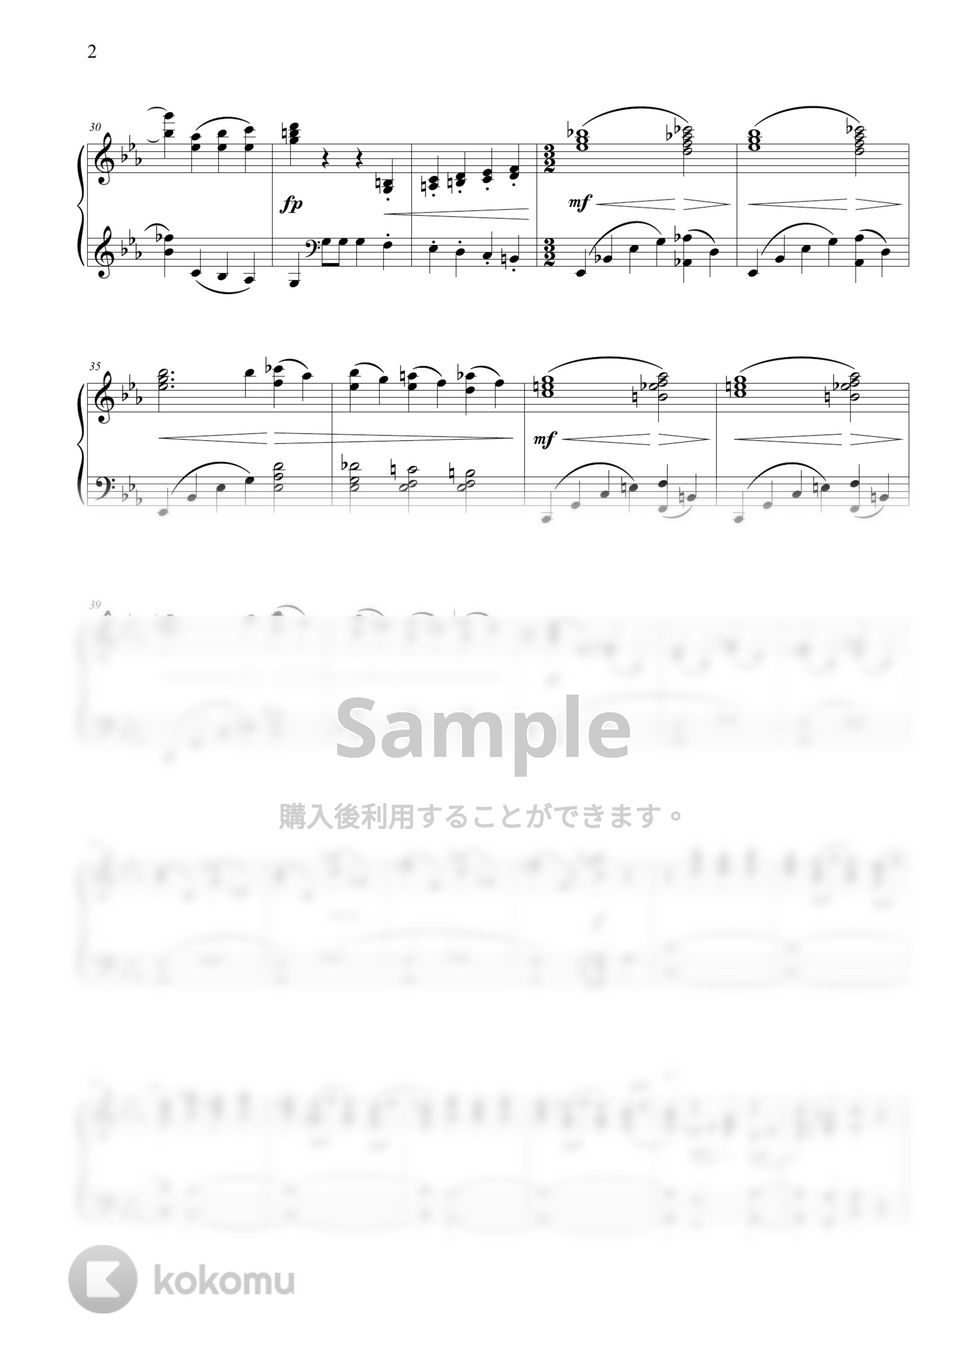 ラフマニノフ - ピアノ協奏曲第2番第3楽章 by THIS IS PIANO